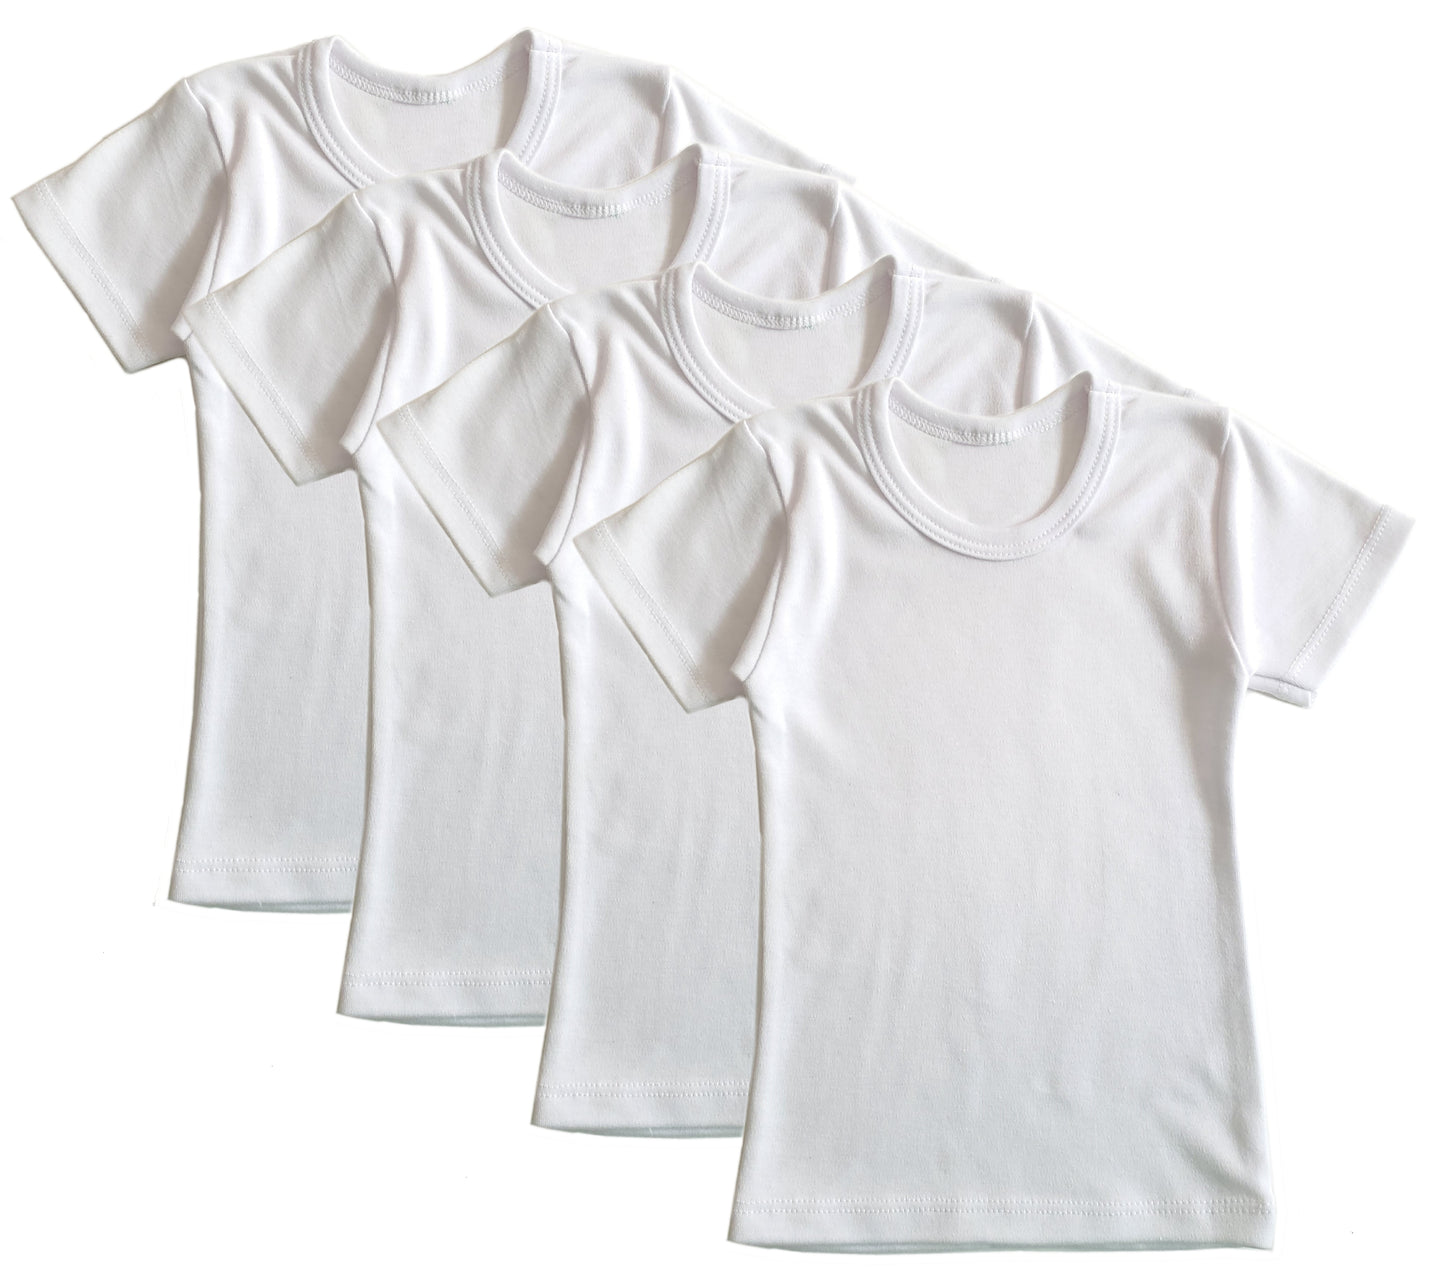 Boys Short Sleeve Undershirt Top Kids 4-Pack